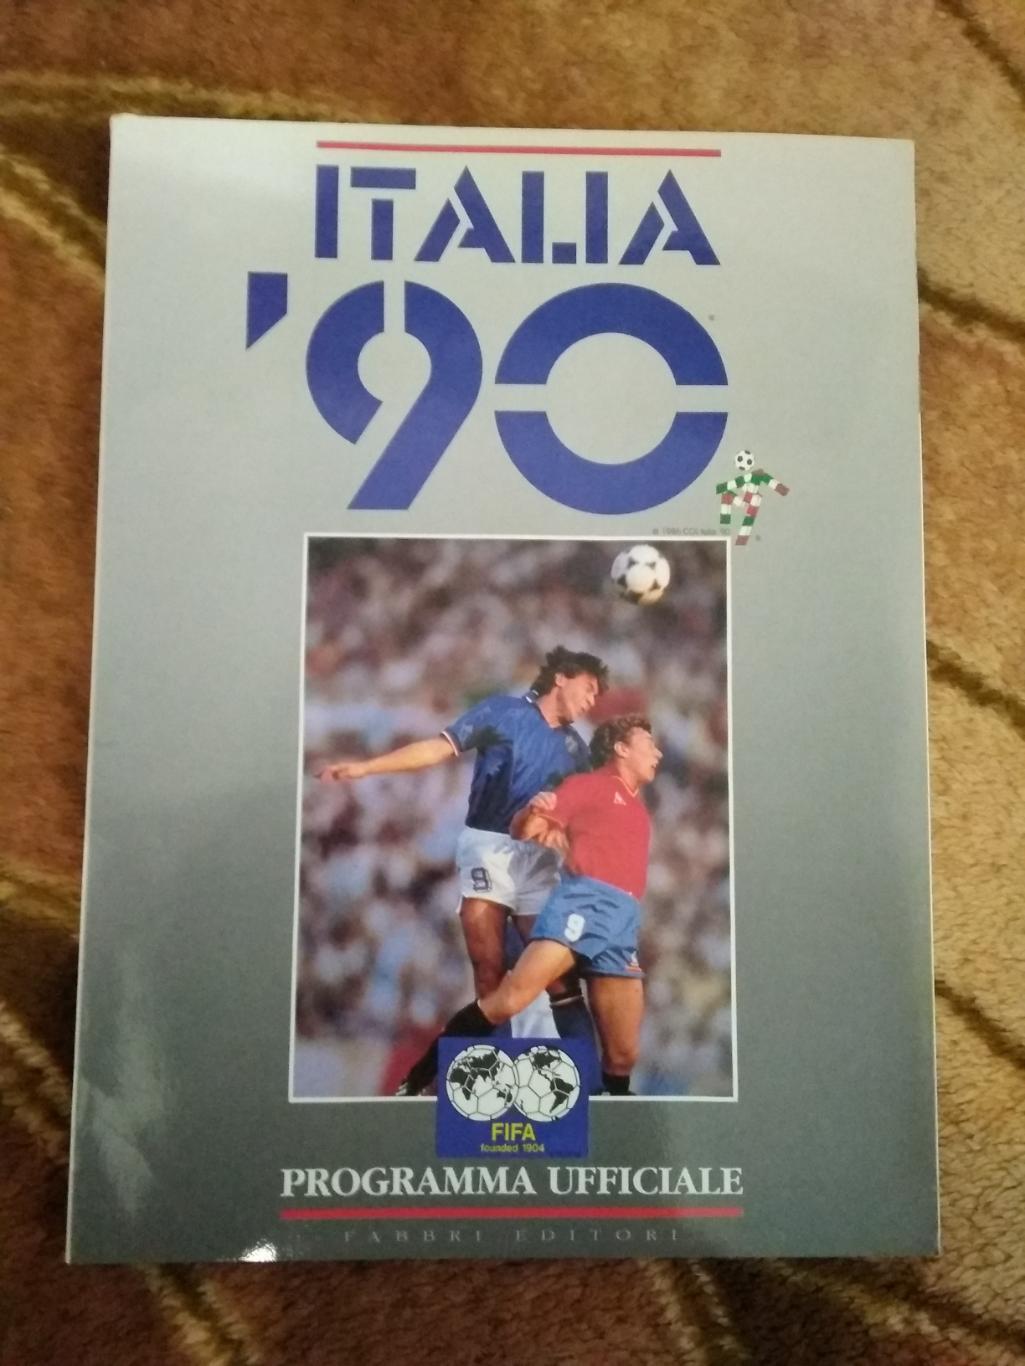 Чемпионат мира по футболу 1990.Италия.(общая, официальная) (СССР).